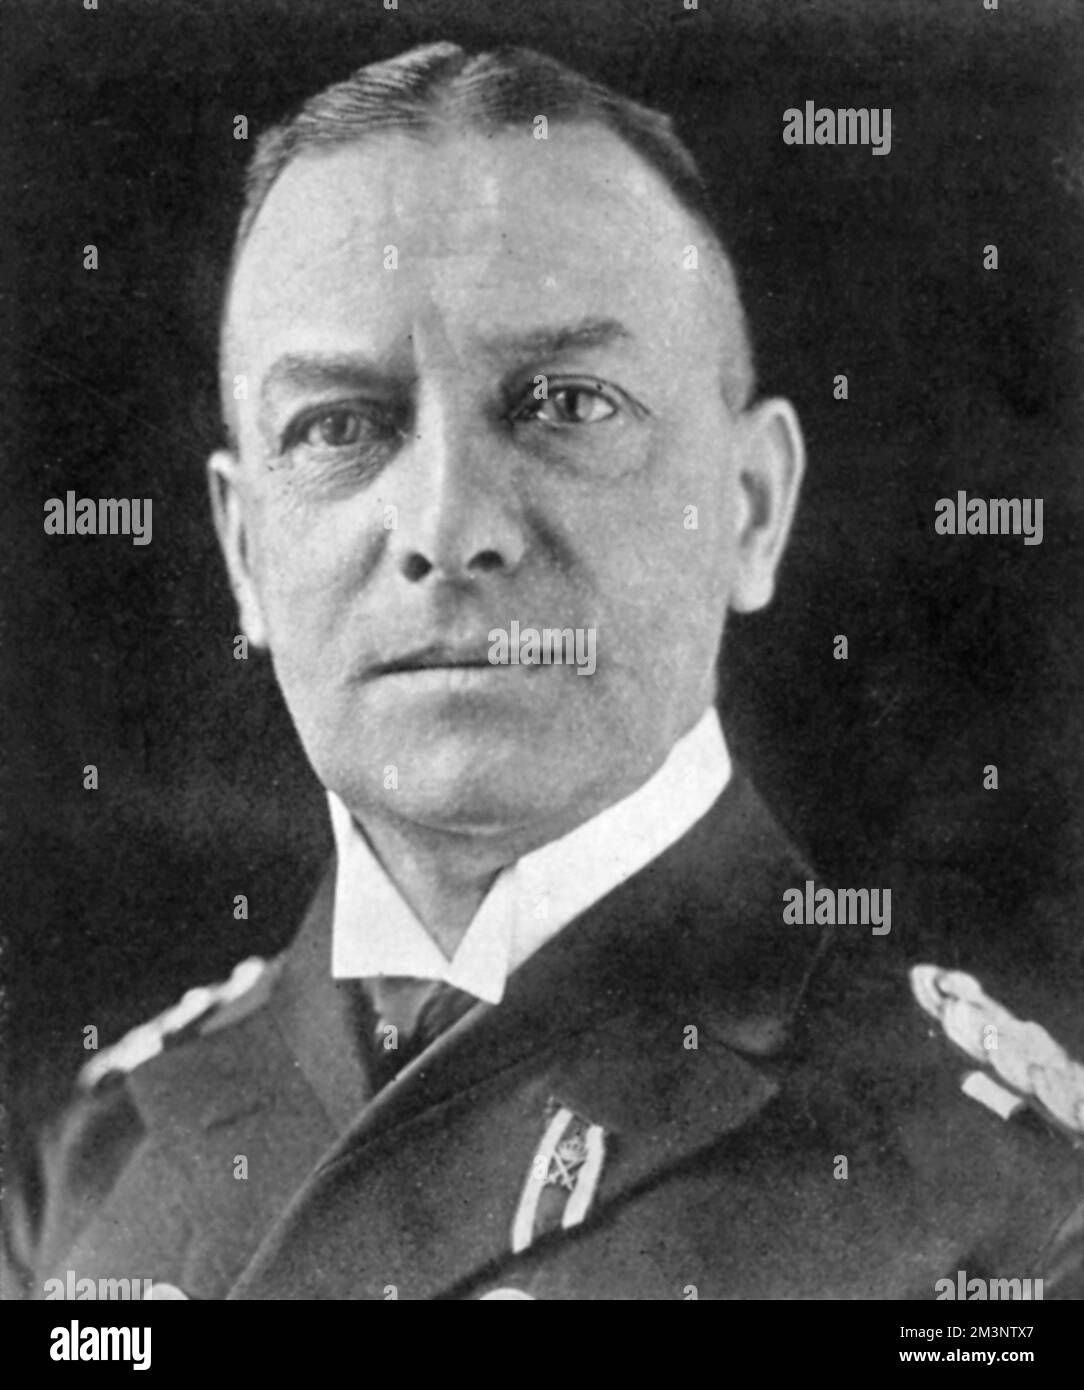 Erich Johann Albert Raeder (24 aprile 1876 6 novembre 1960) leader navale tedesco in Germania prima e durante la seconda guerra mondiale Raeder raggiunse il più alto rankthat navale possibile di Gro&#x7e1;dmiral (Grande Ammiraglio) nel 1939, diventando la prima persona a detenere quel rango da Alfred von Tirpitz. Raeder guidò il Kriegsmarine (Marina tedesca) per la prima metà della guerra, ma si dimise nel 1943 e fu sostituito da Karl D&#x1aea74;z. È stato condannato a vita in prigione durante il processo di Norimberga, ma è stato poi rilasciato. Data: 1939 Foto Stock